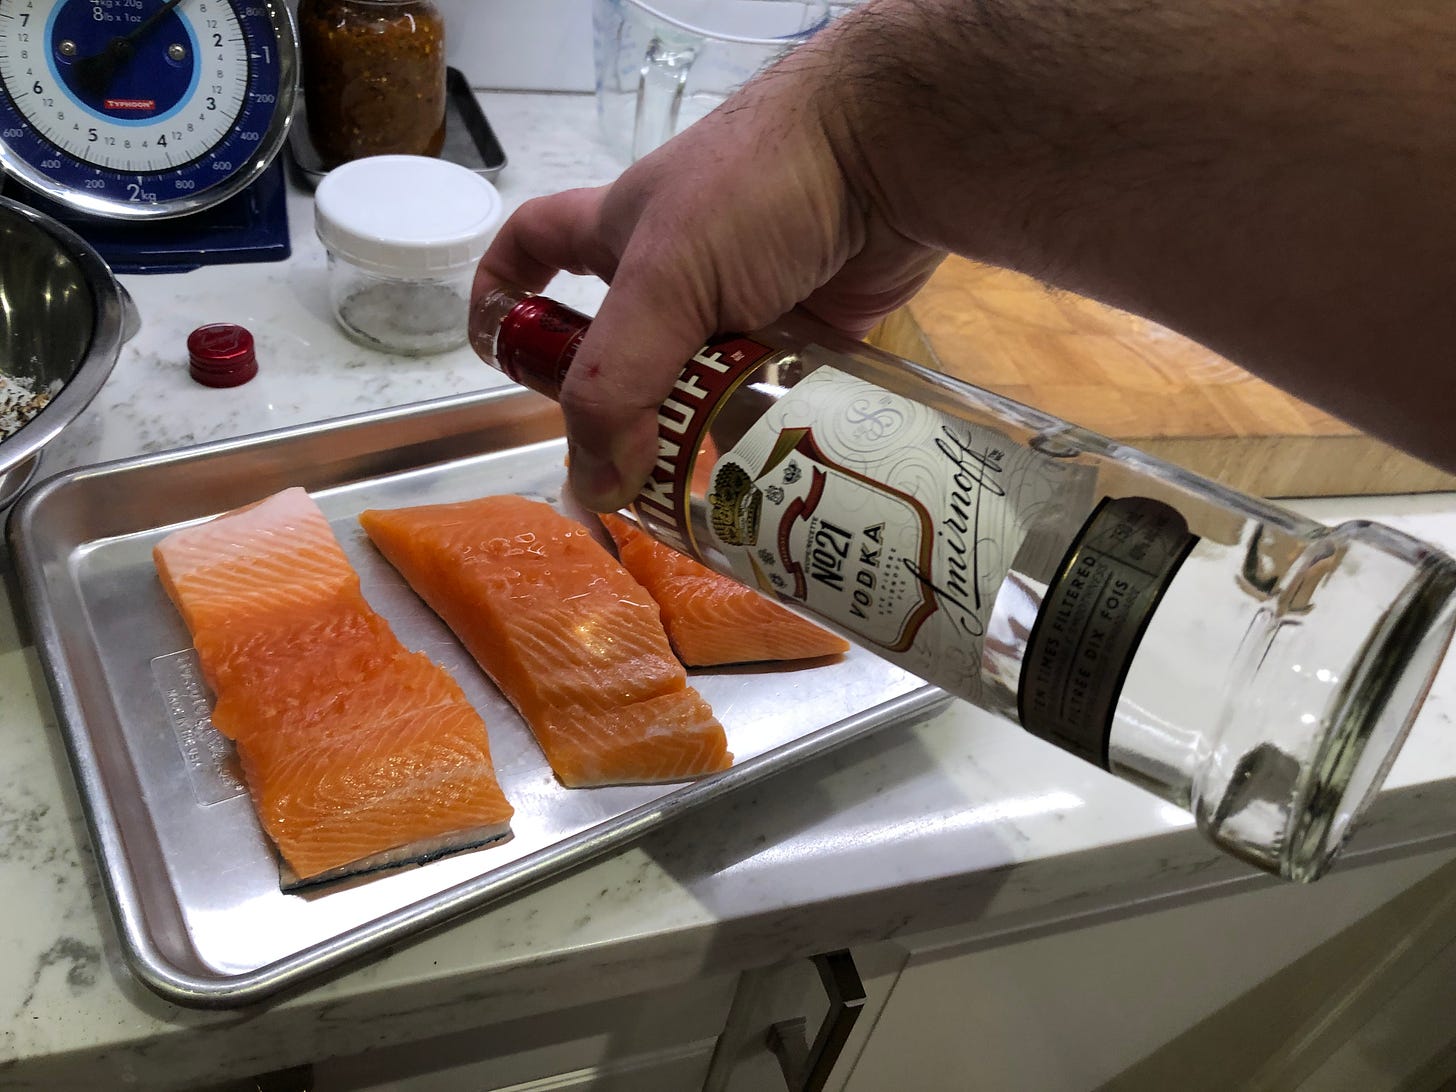 Splashing the salmon pieces with vodka